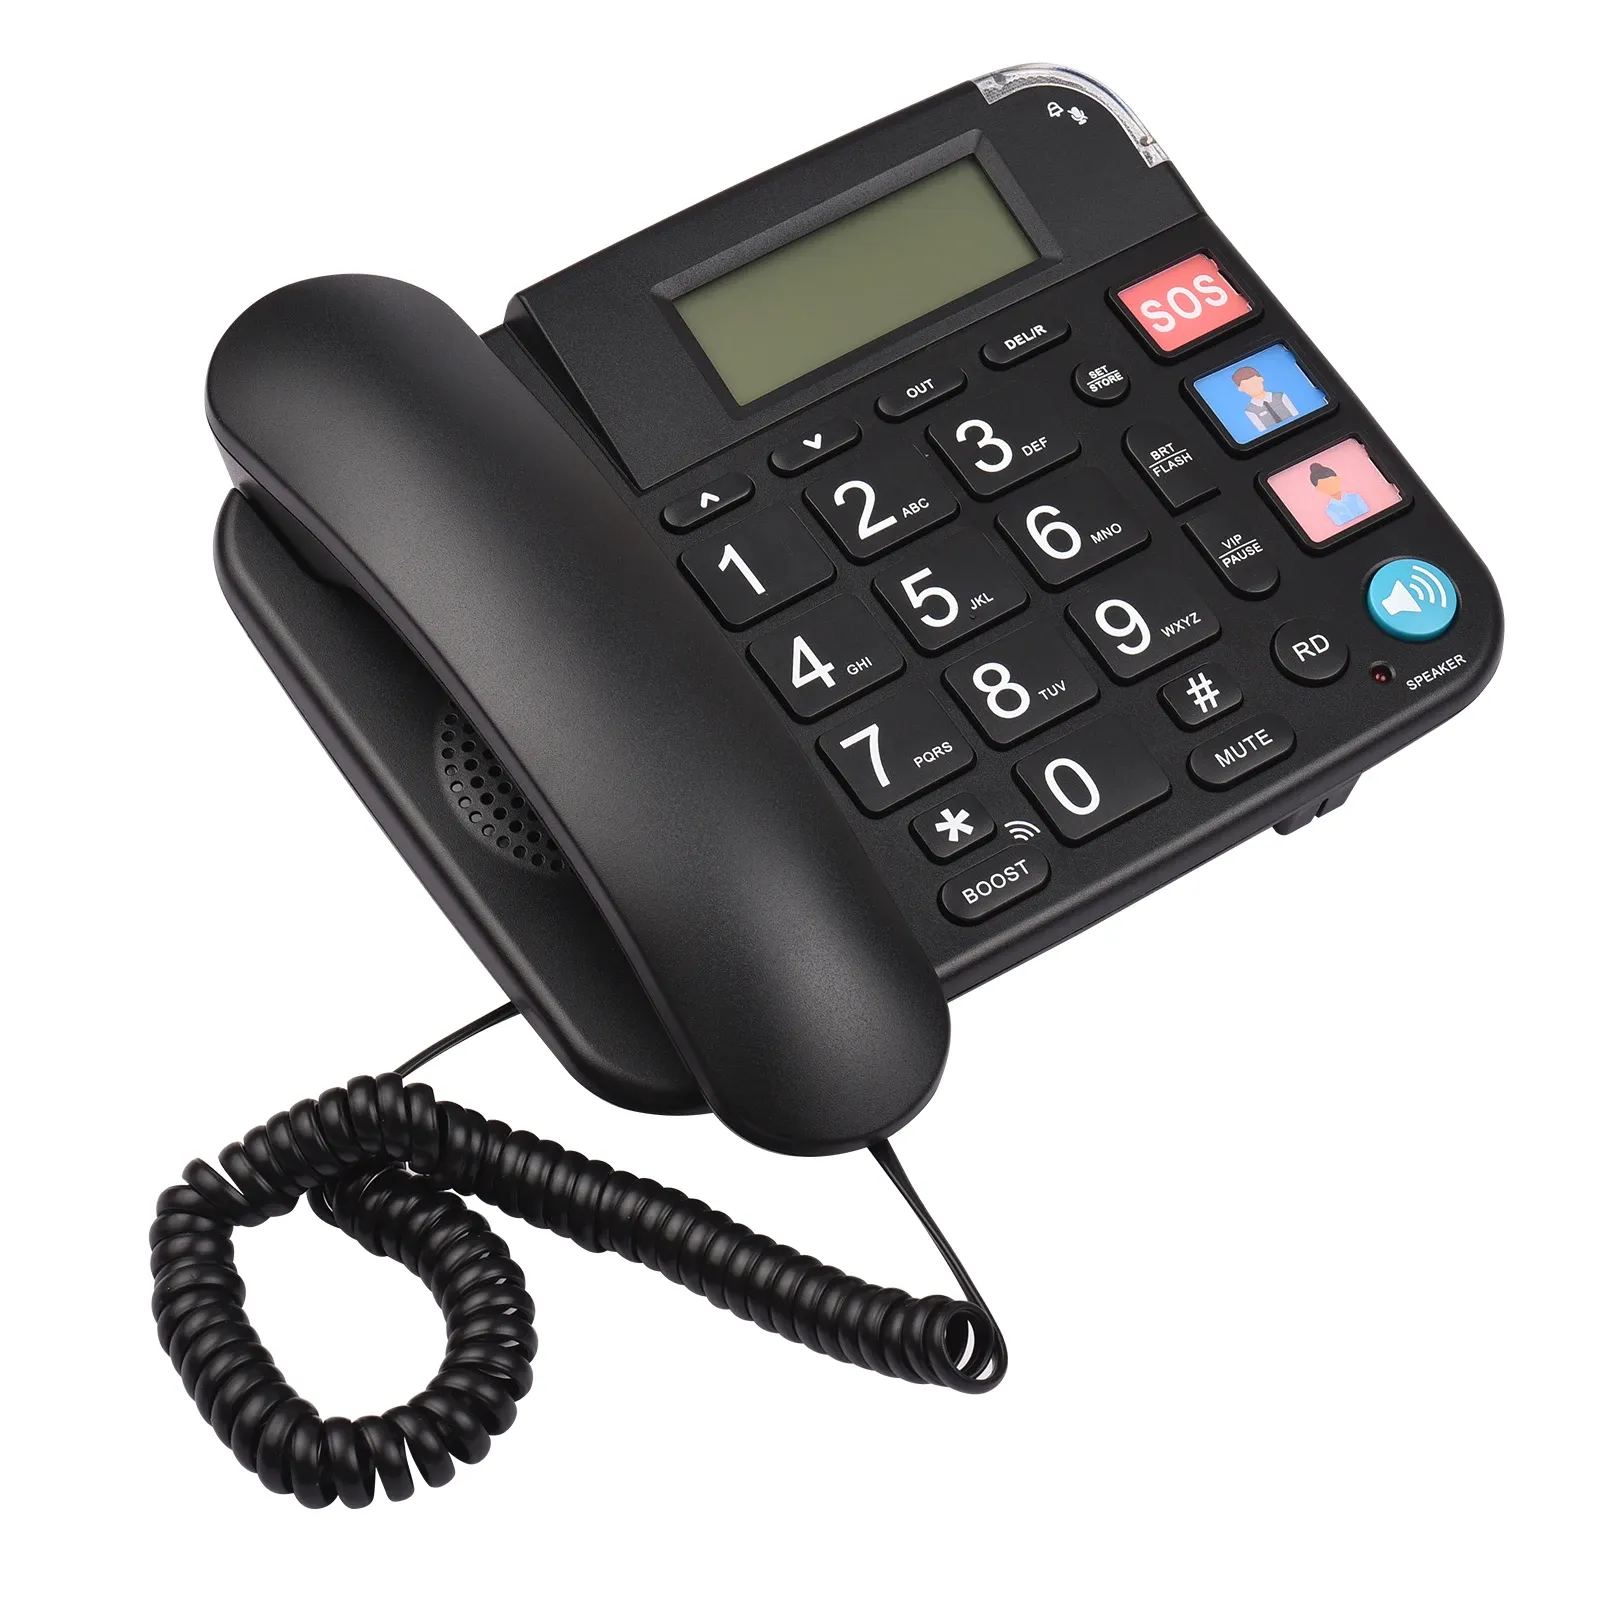 Accessoires Zwart Corded Telefoon met grote knop bureau vaste telefoon Telefoon Ondersteuning Handsfree/redial/flash/speed Dial/ring volumeregeling